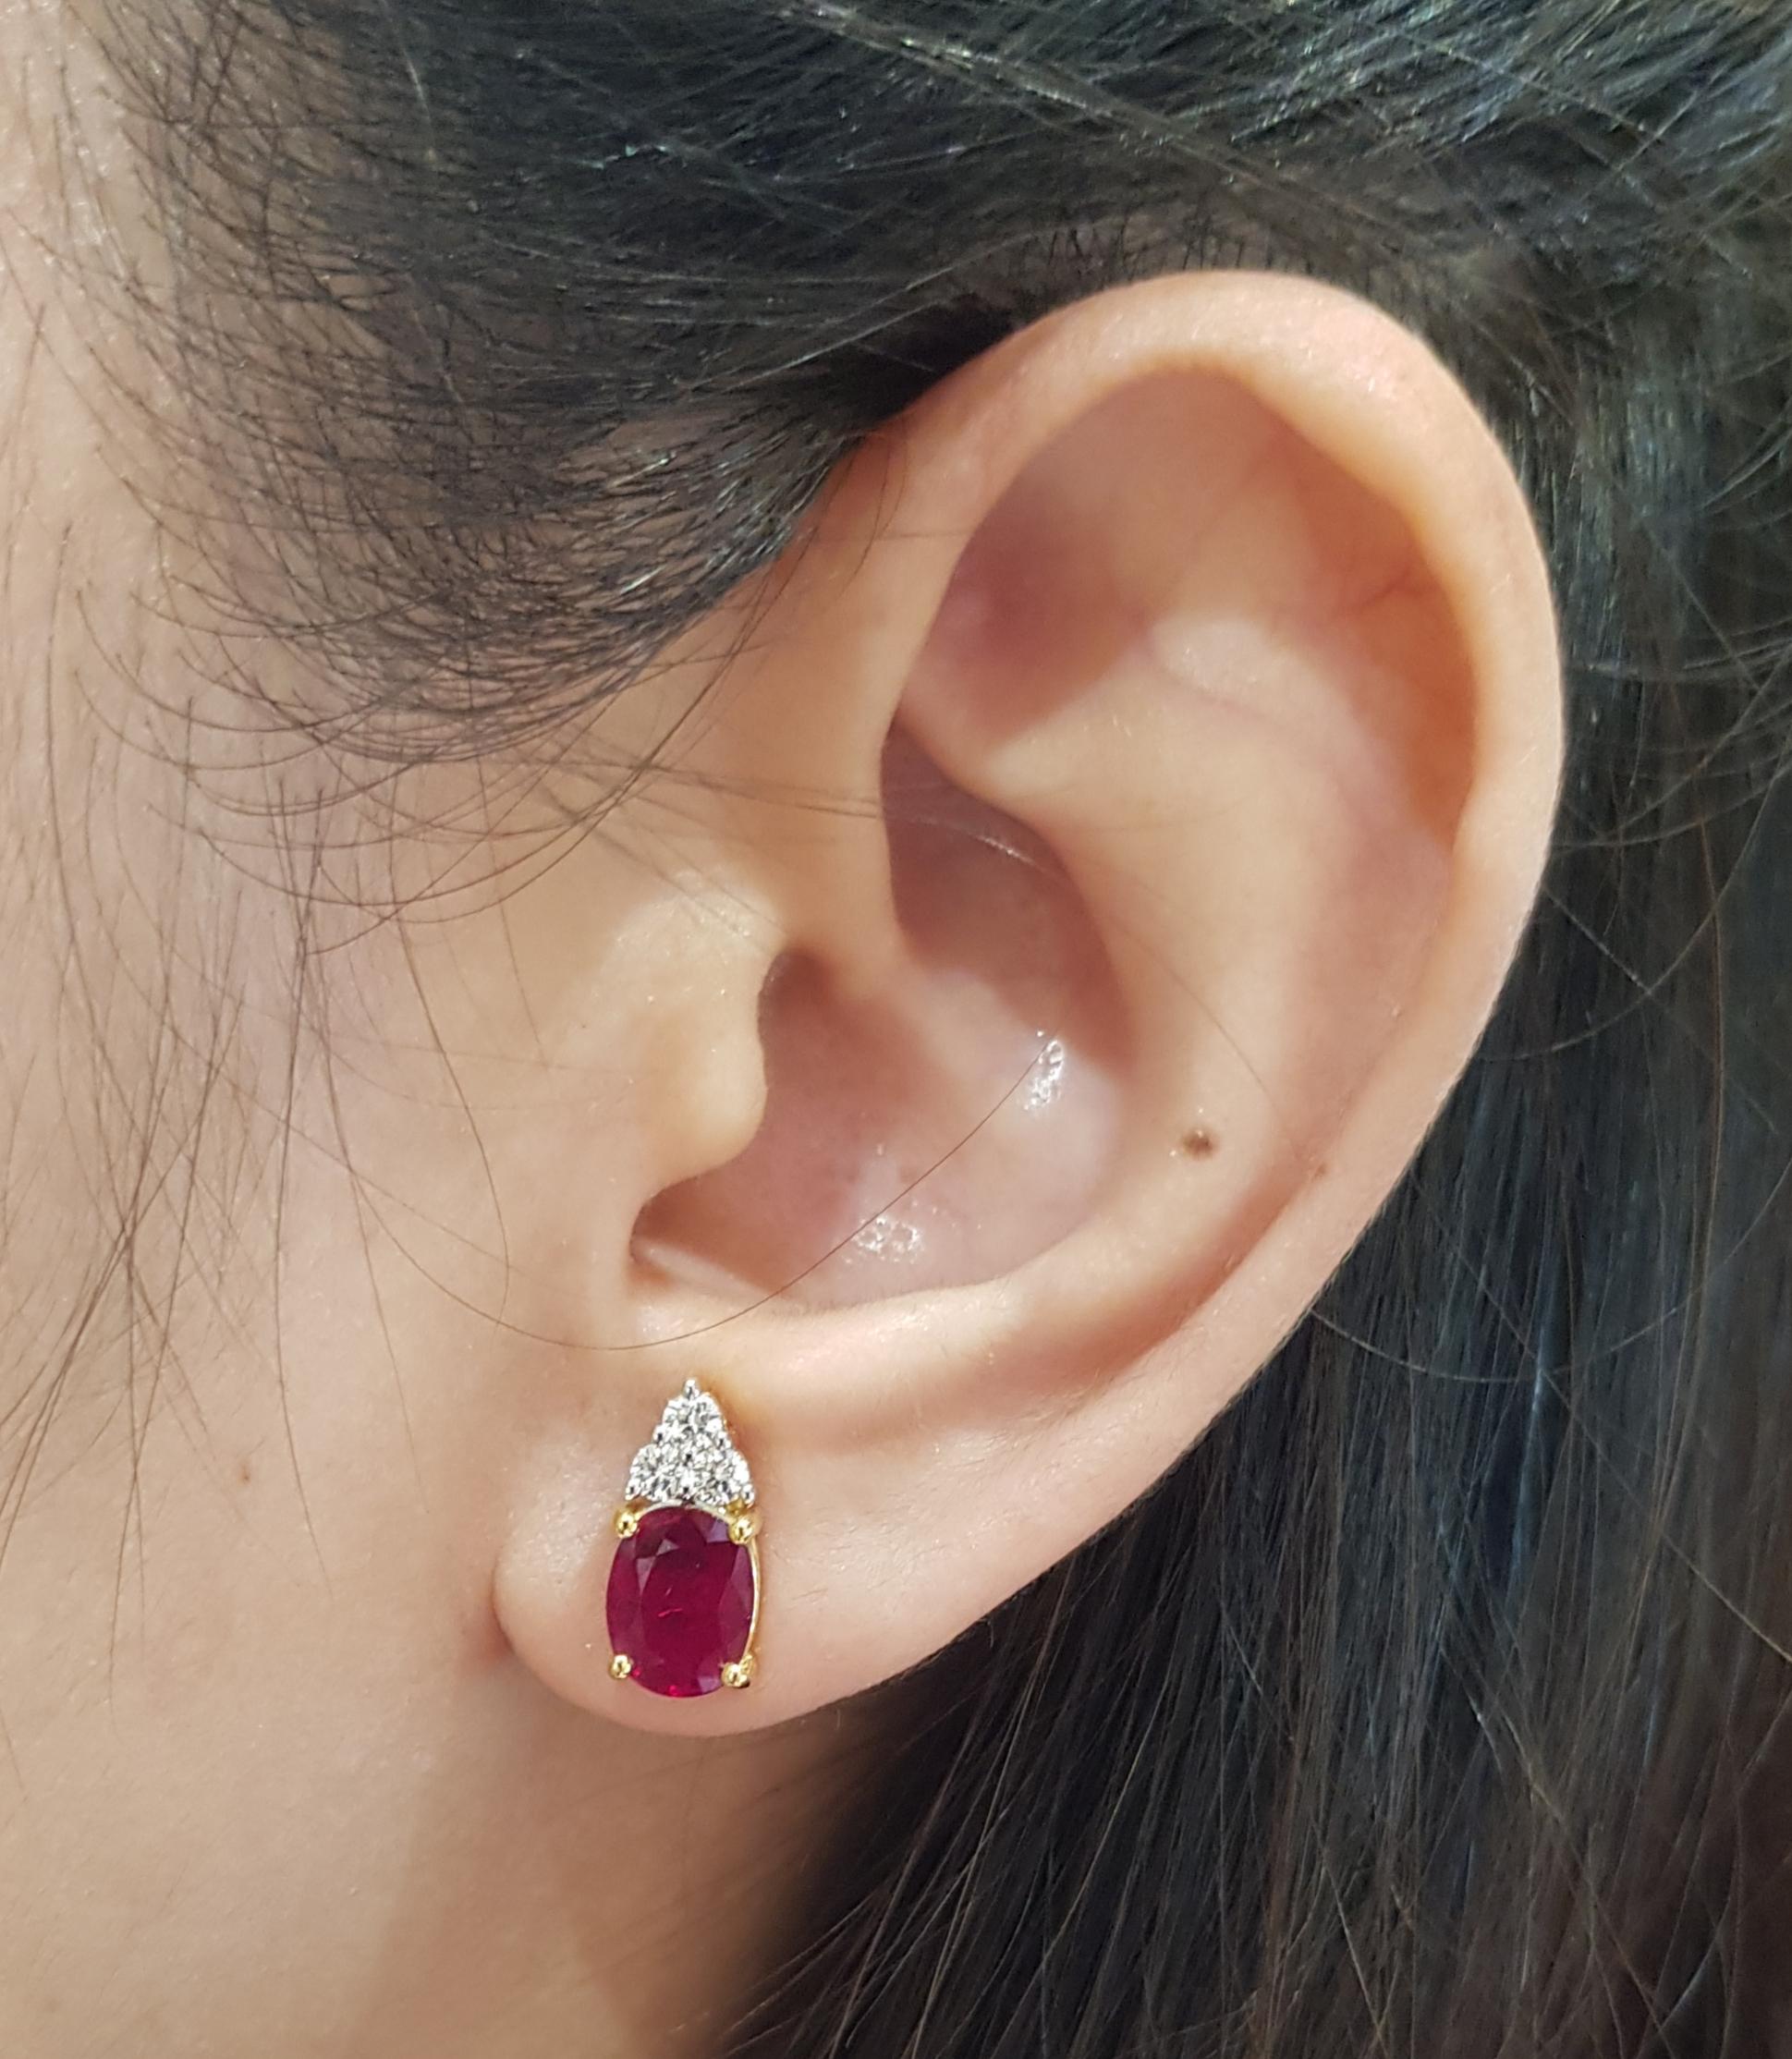 Boucles d'oreilles composées d'un rubis de 1,87 carat et d'un diamant de 0,30 carat sertis dans une monture en or 18 carats

Largeur :  0,6 cm 
Longueur :  1,3 cm
Poids total : 4,03 grammes

